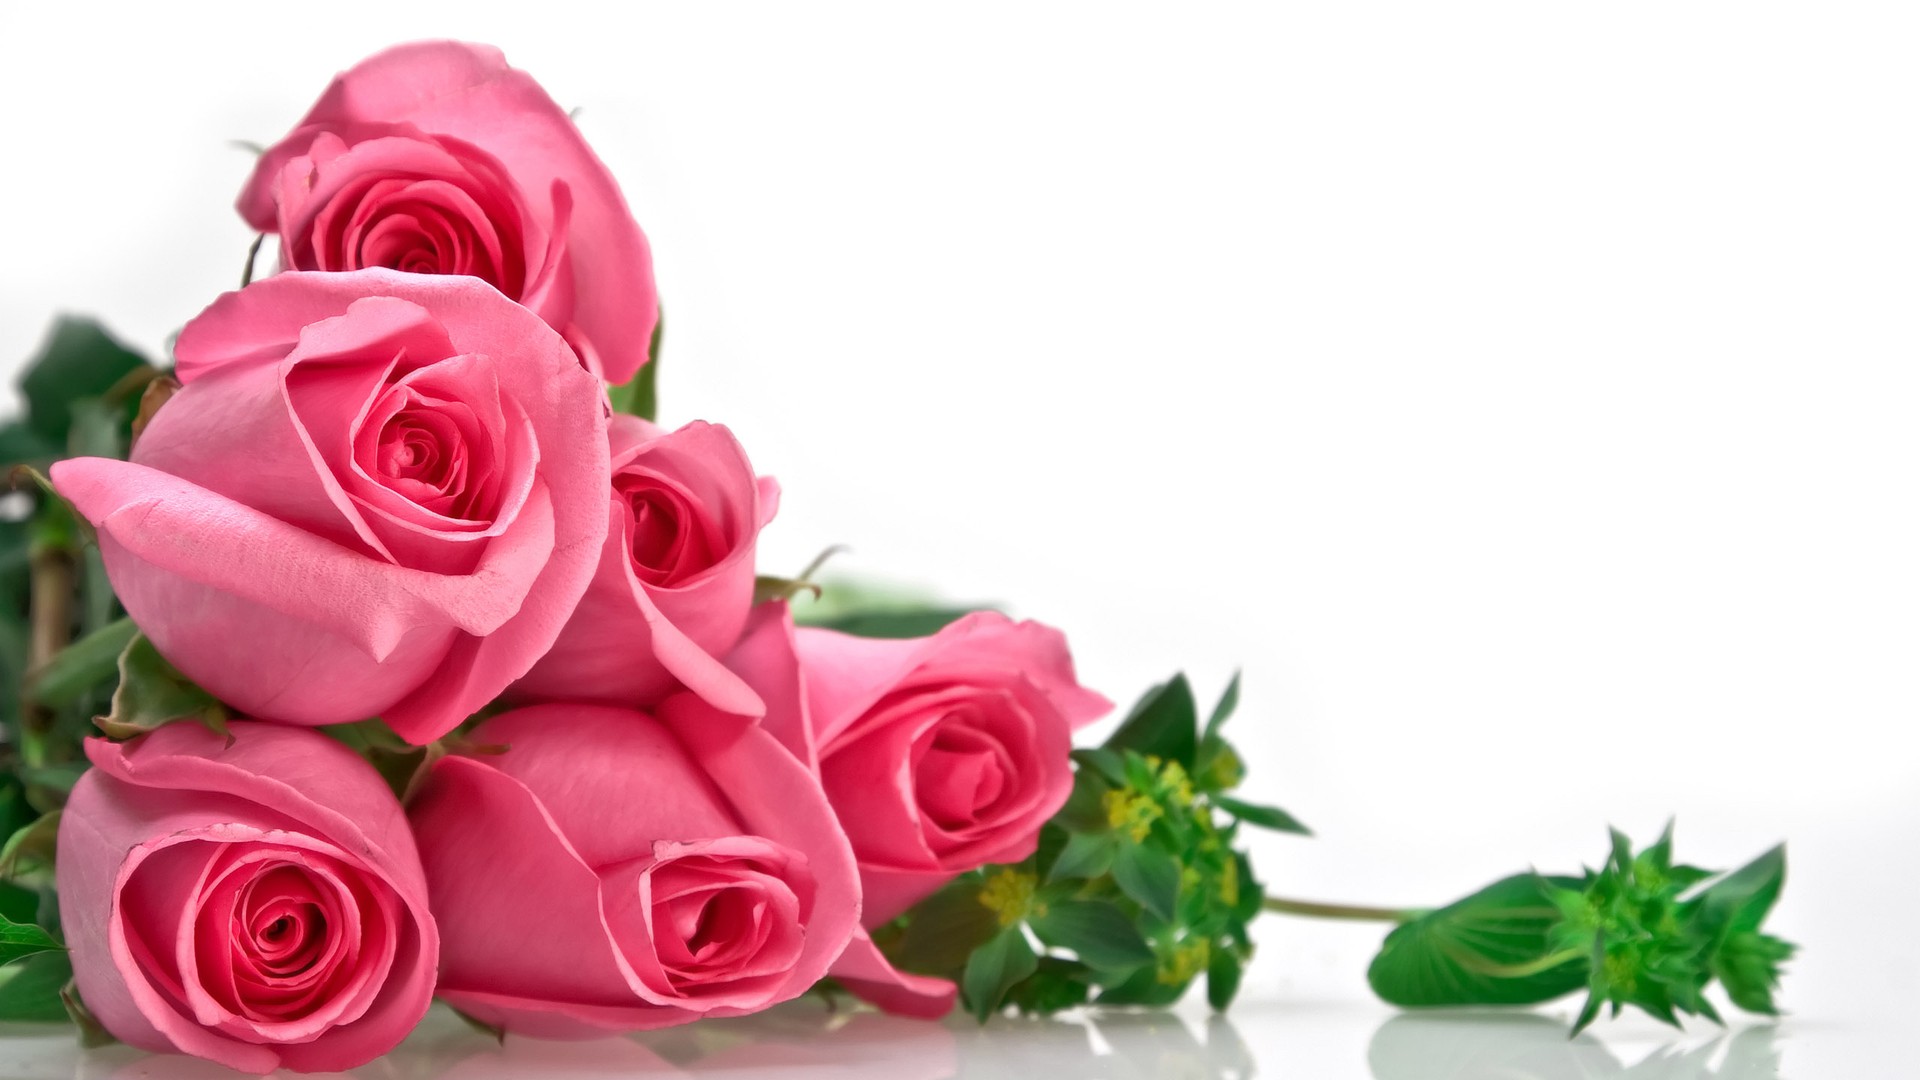 Hoa hồng phấn tượng trưng cho tình yêu ngọt ngào, lãng mạn